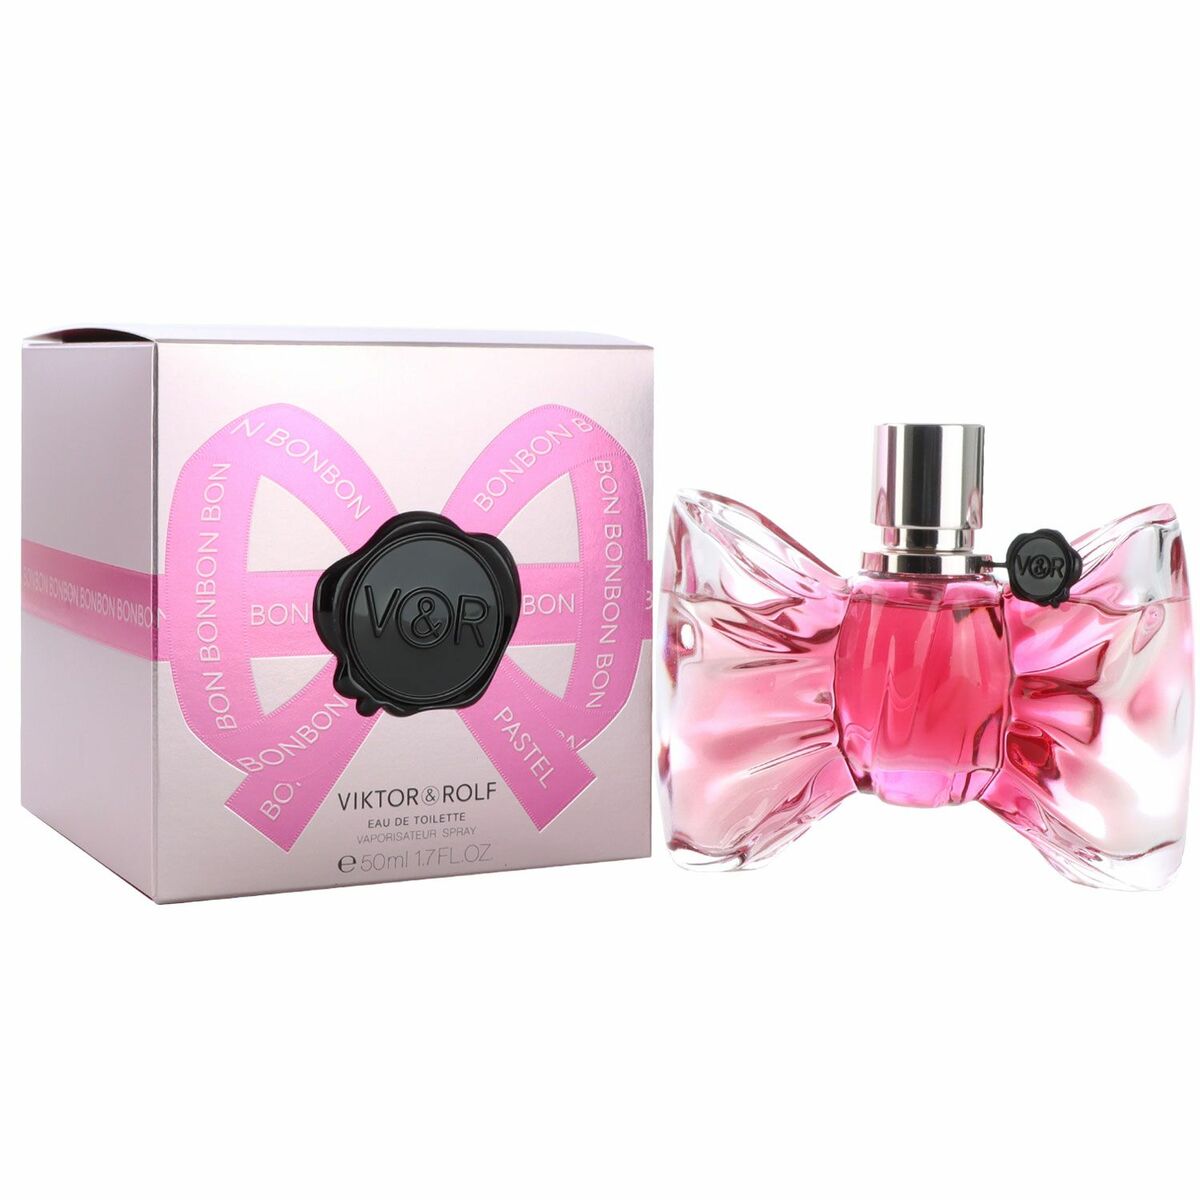 Women's Perfume Viktor & Rolf EDT Bonbon Pastel 50 ml